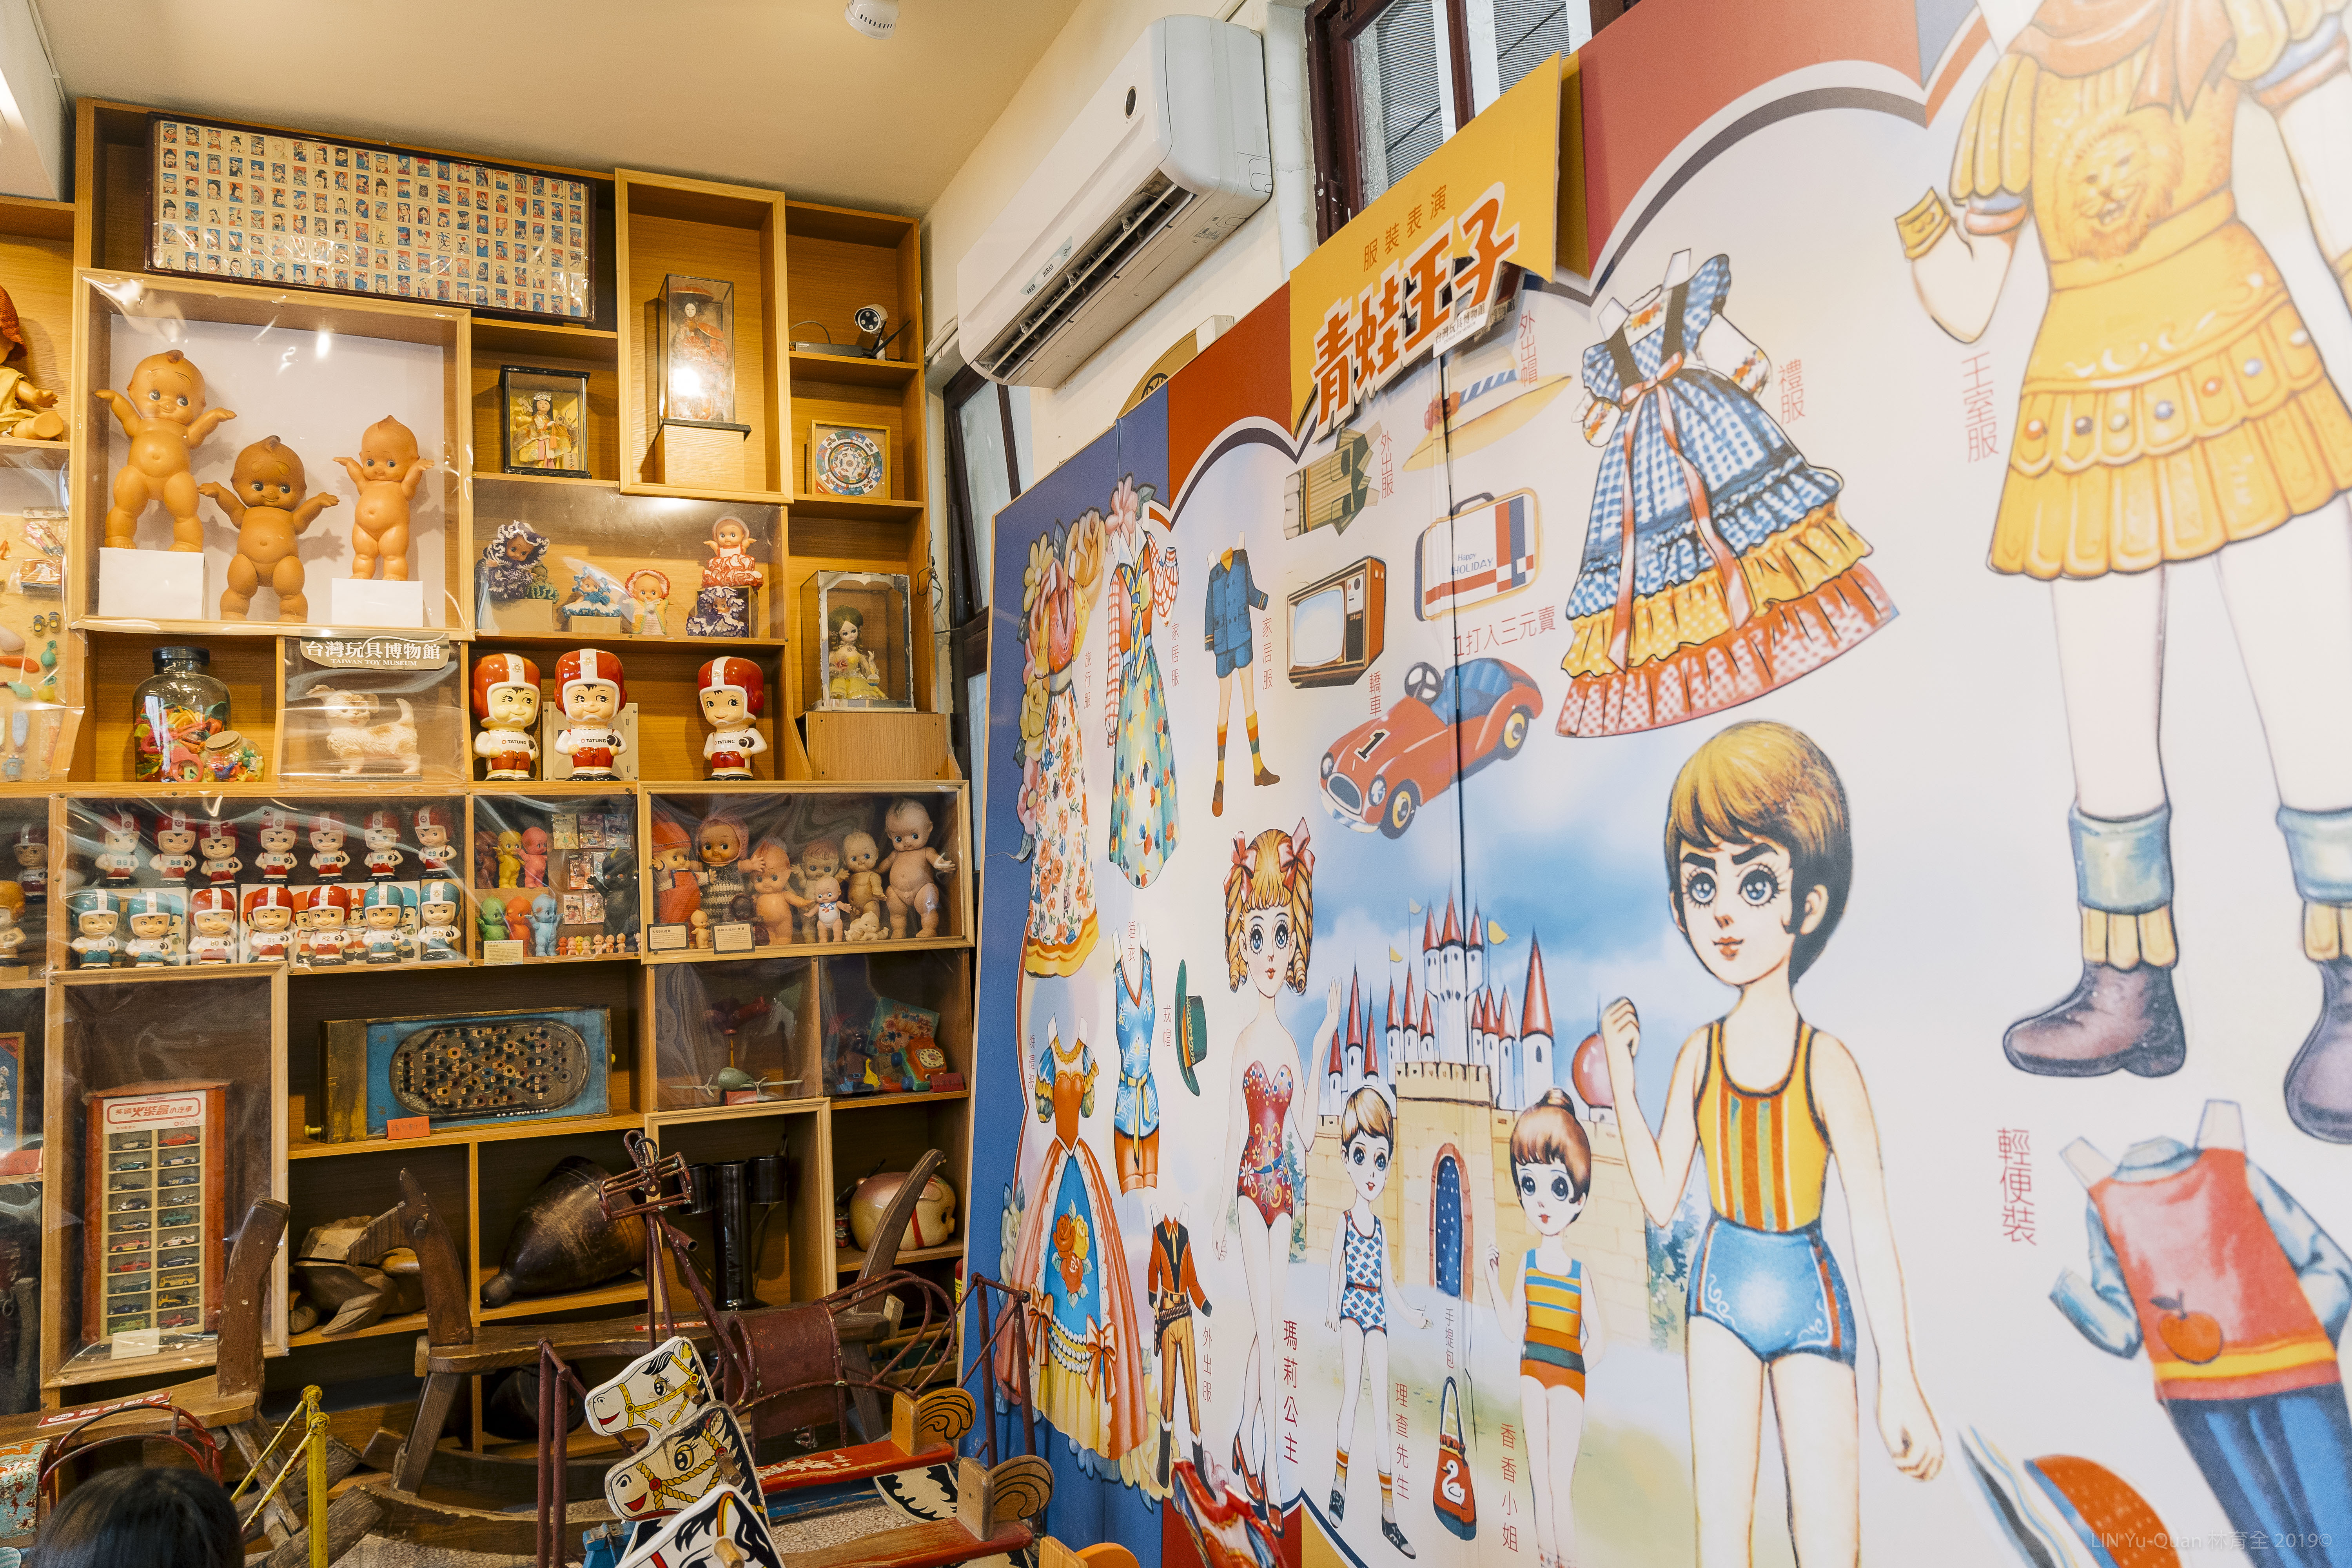 ”台灣玩具博物館內部照片”